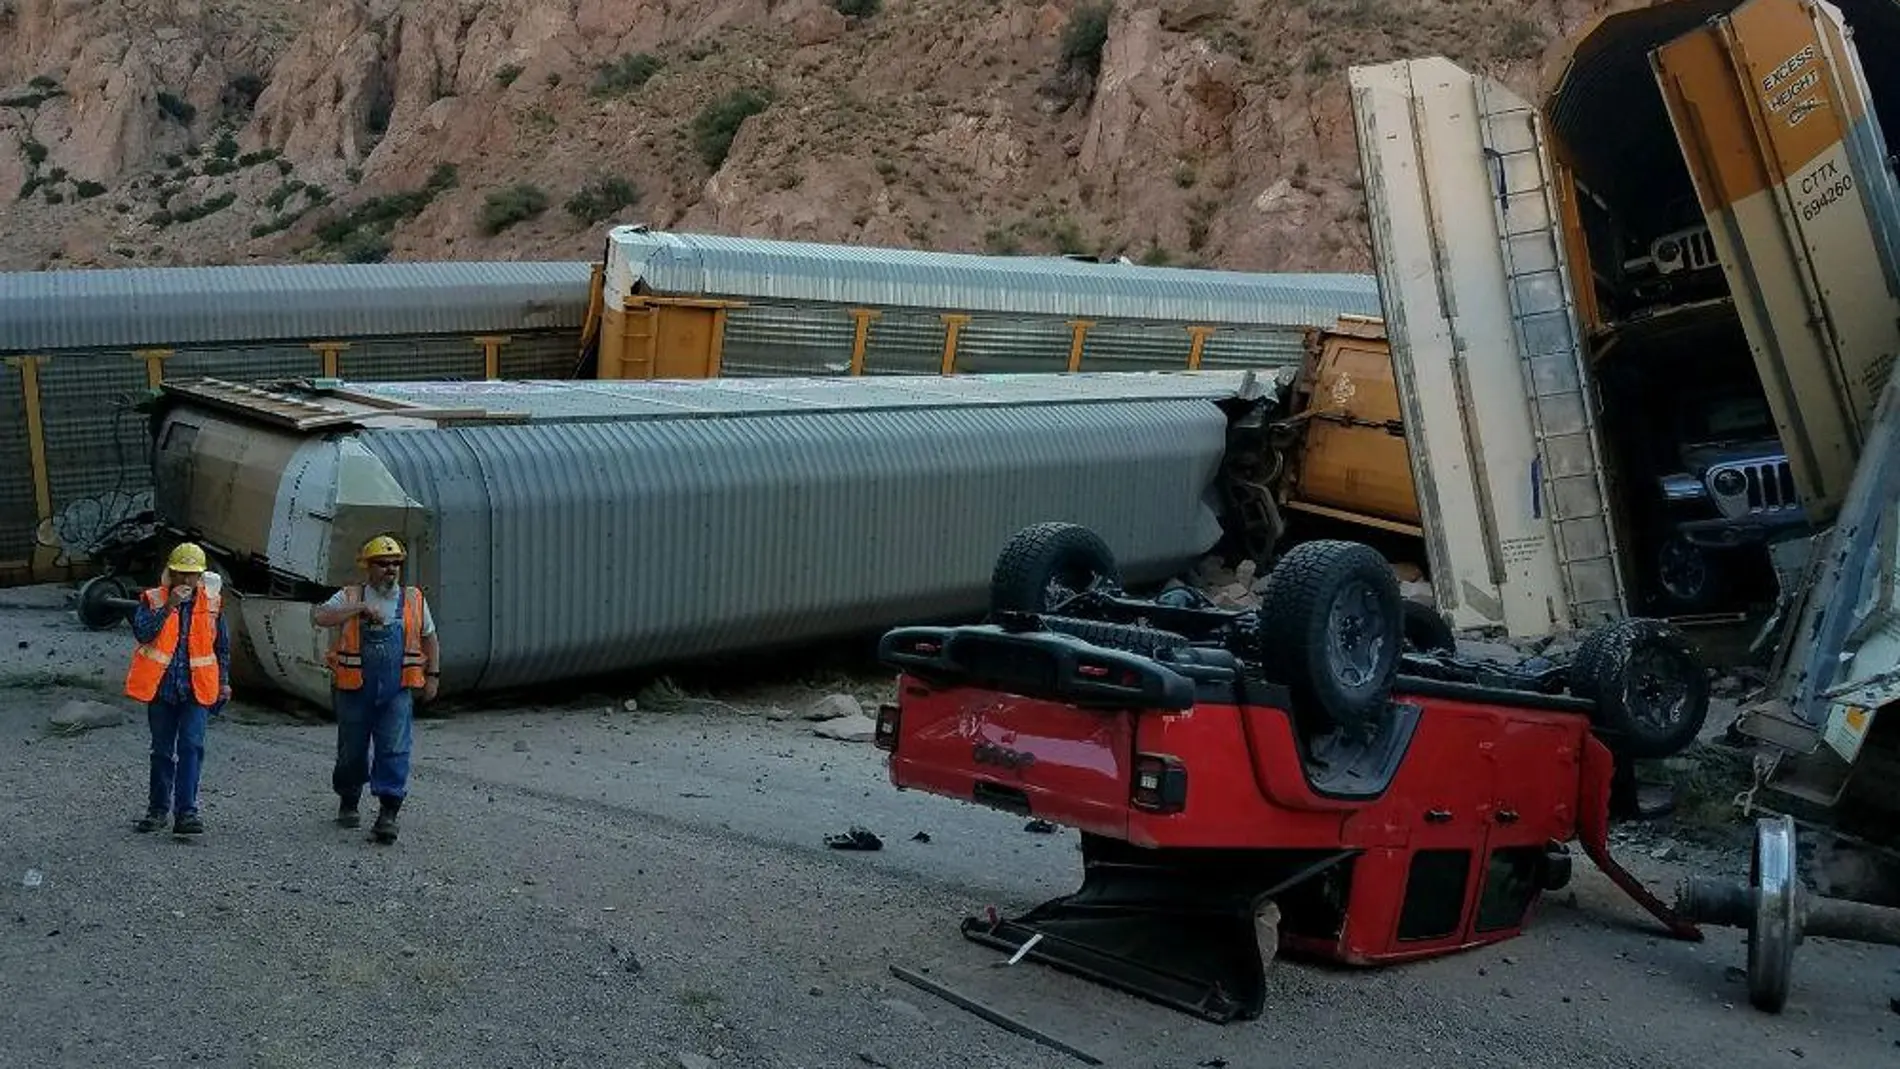 Estropicio a Jeep: un tren descarrila y destroza 33 coches